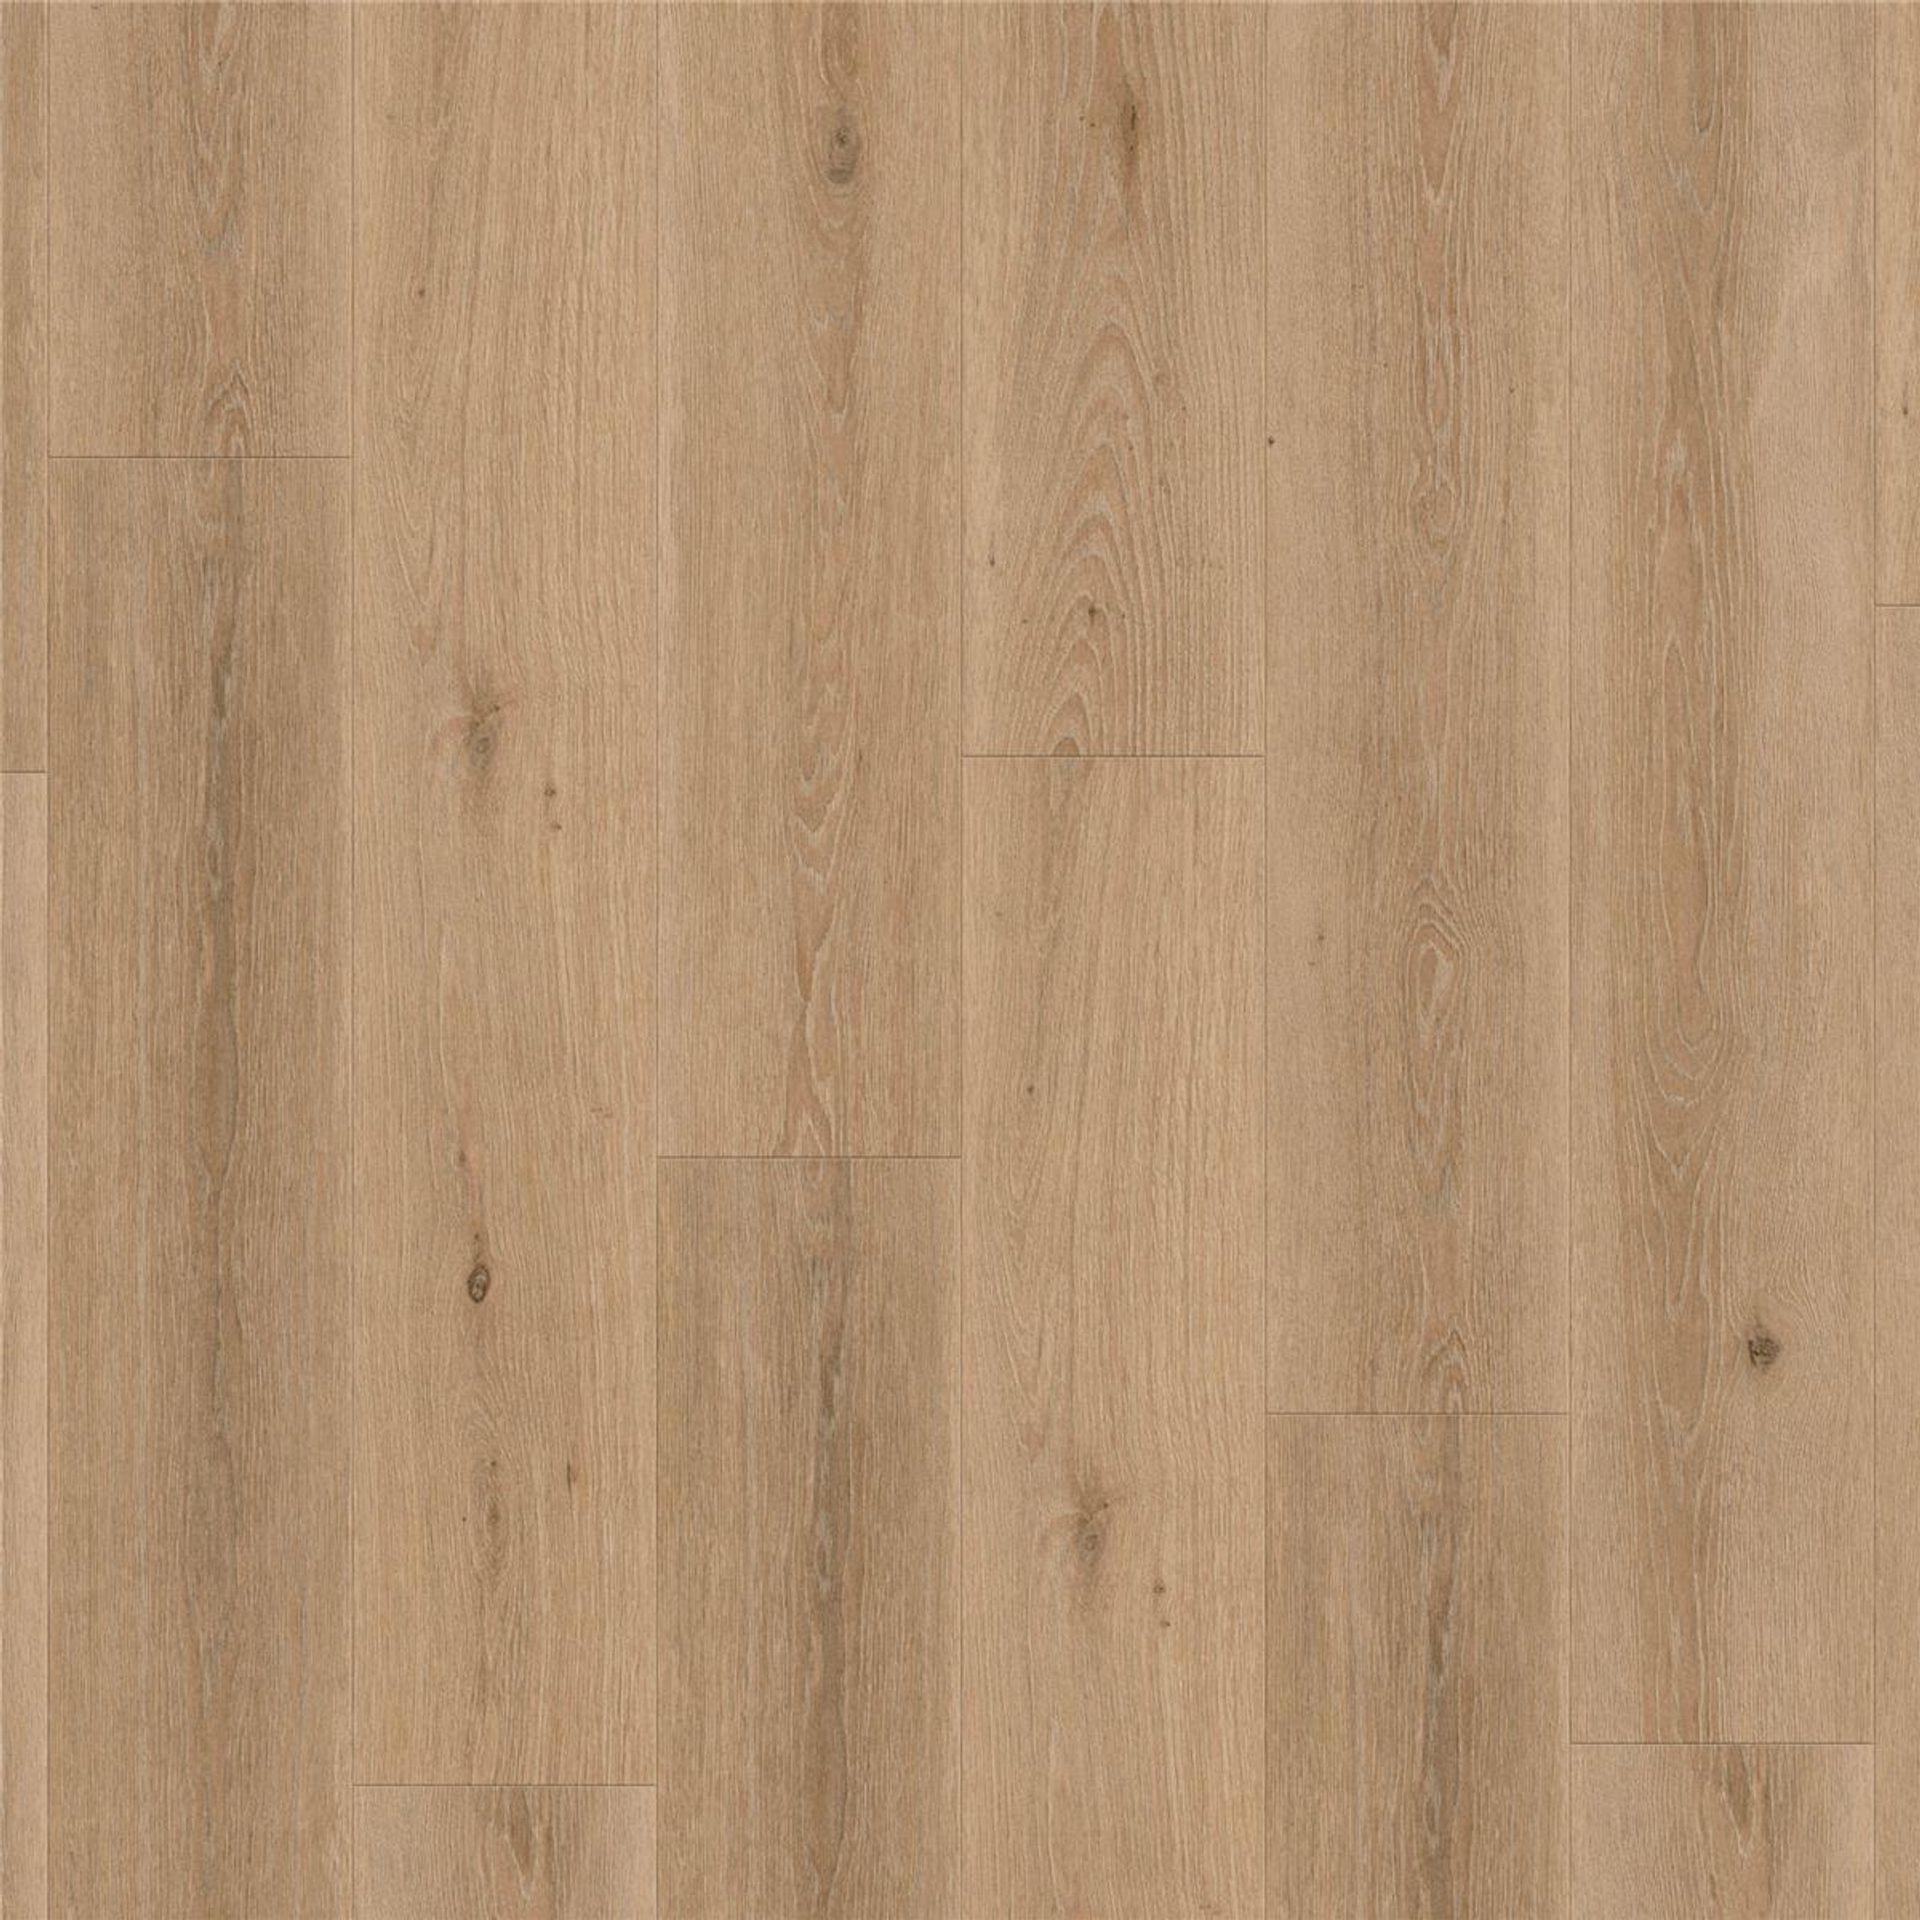 Designboden AUTHENTICS-Highland Oak-Cream Planke 121,1 cm x 19,05 cm - Nutzschichtdicke 0,30 mm